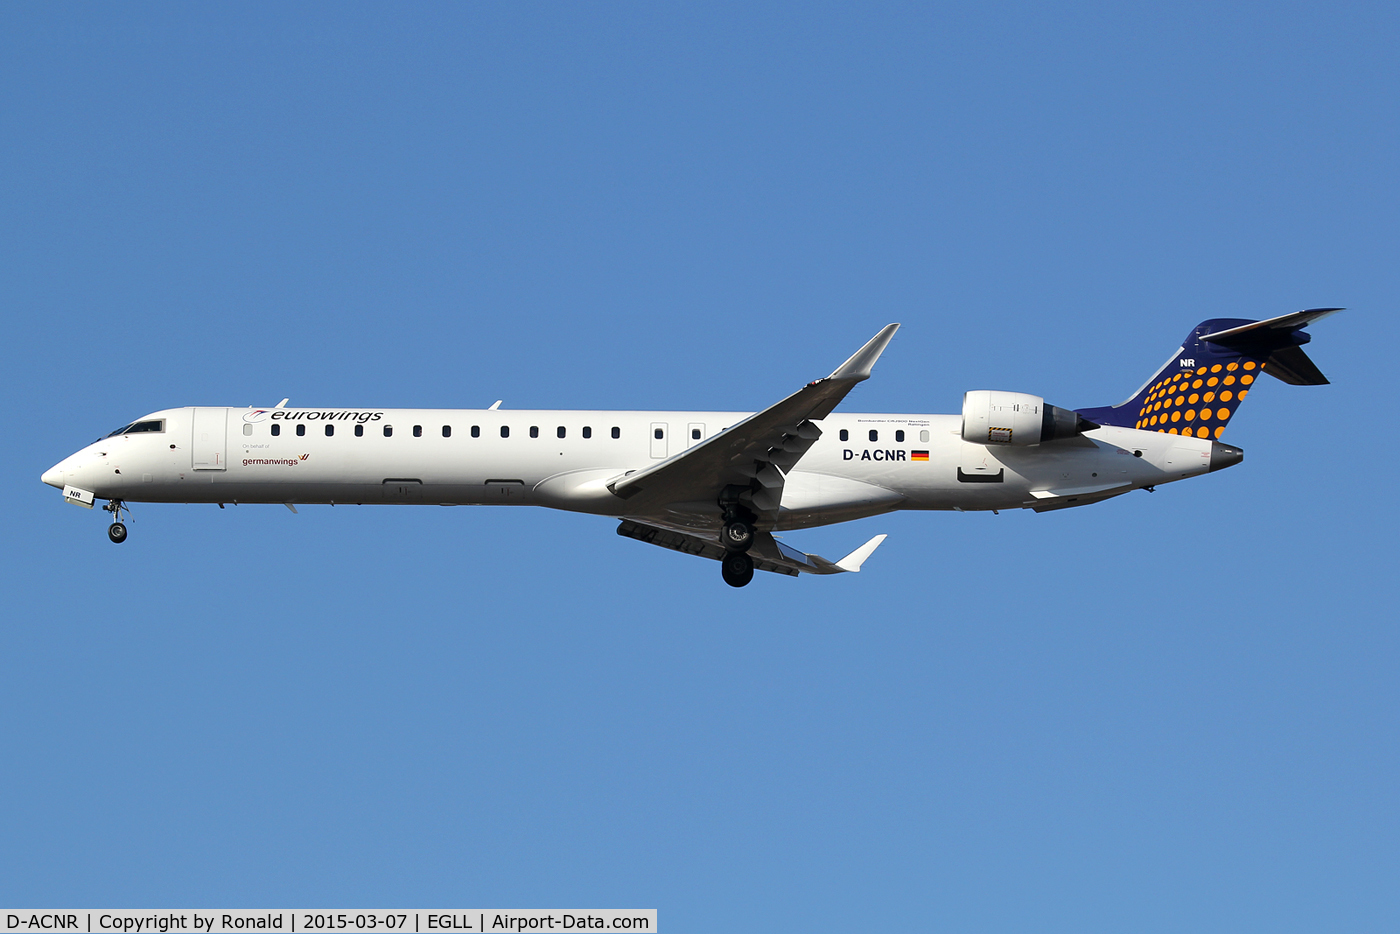 D-ACNR, 2011 Bombardier CRJ-900LR (CL-600-2D24) C/N 15263, at lhr